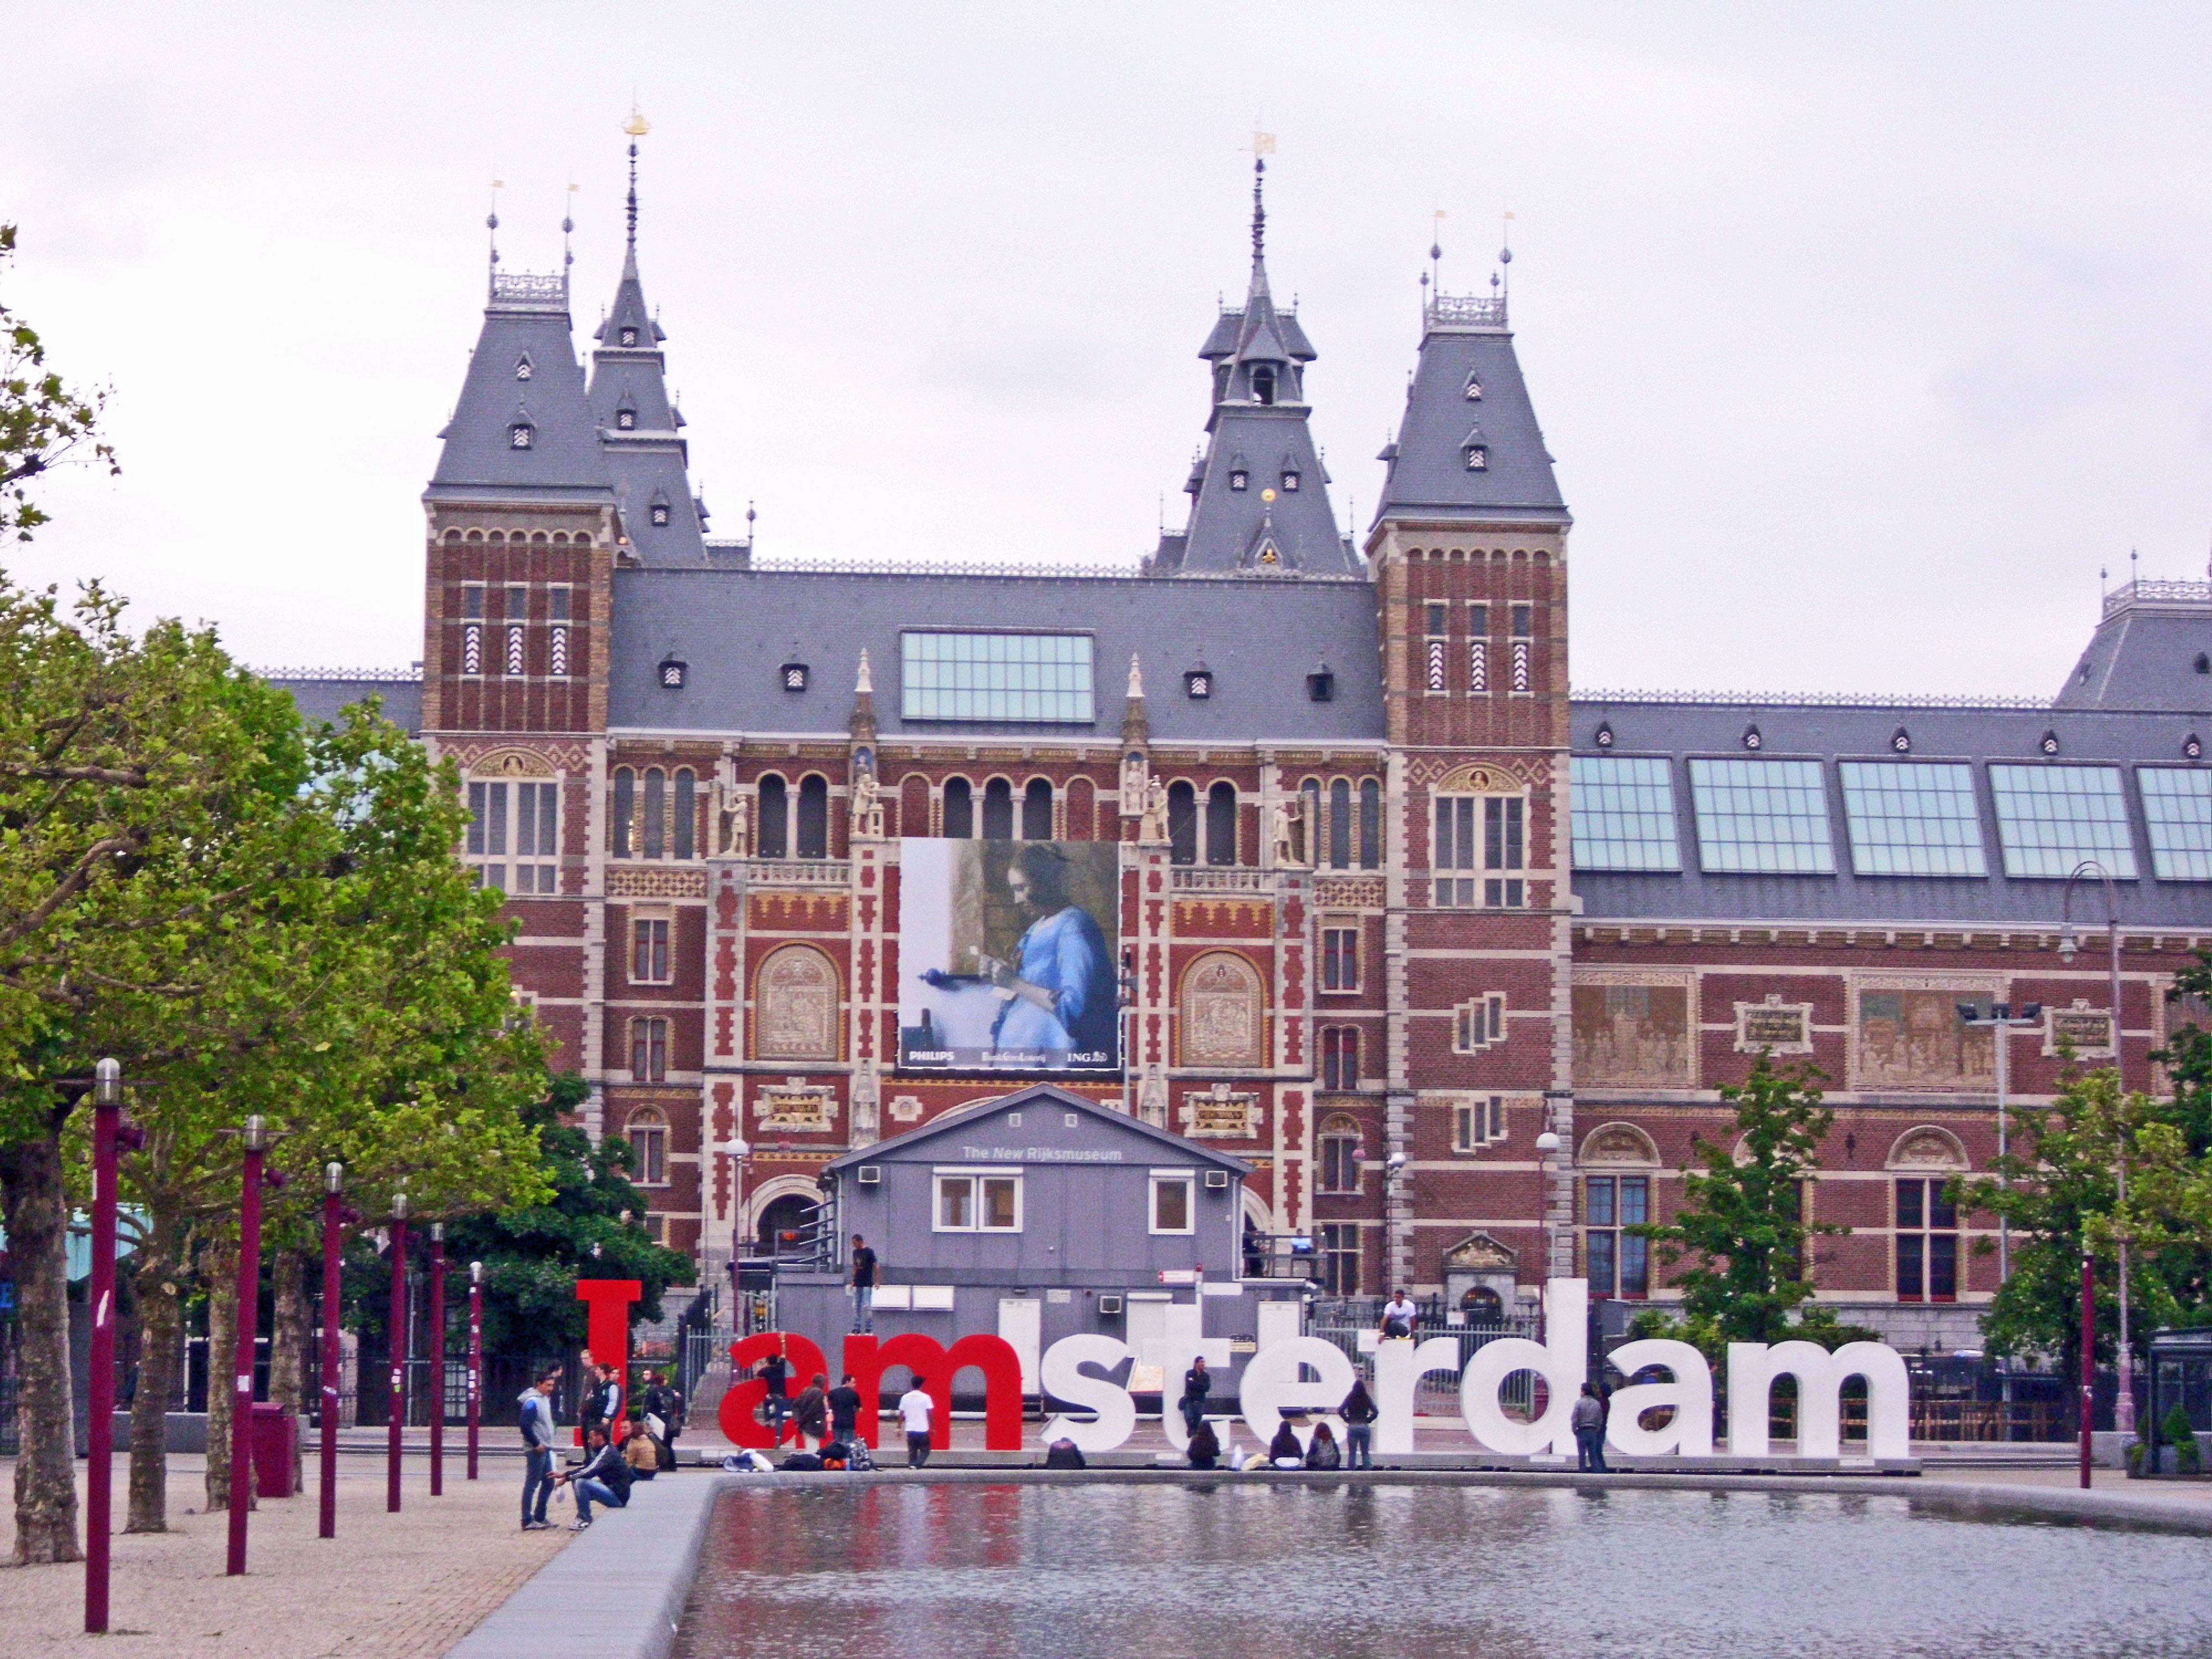 阿姆斯特丹大学阿姆斯特丹大学,是一所坐落在荷兰首都阿姆斯特丹的